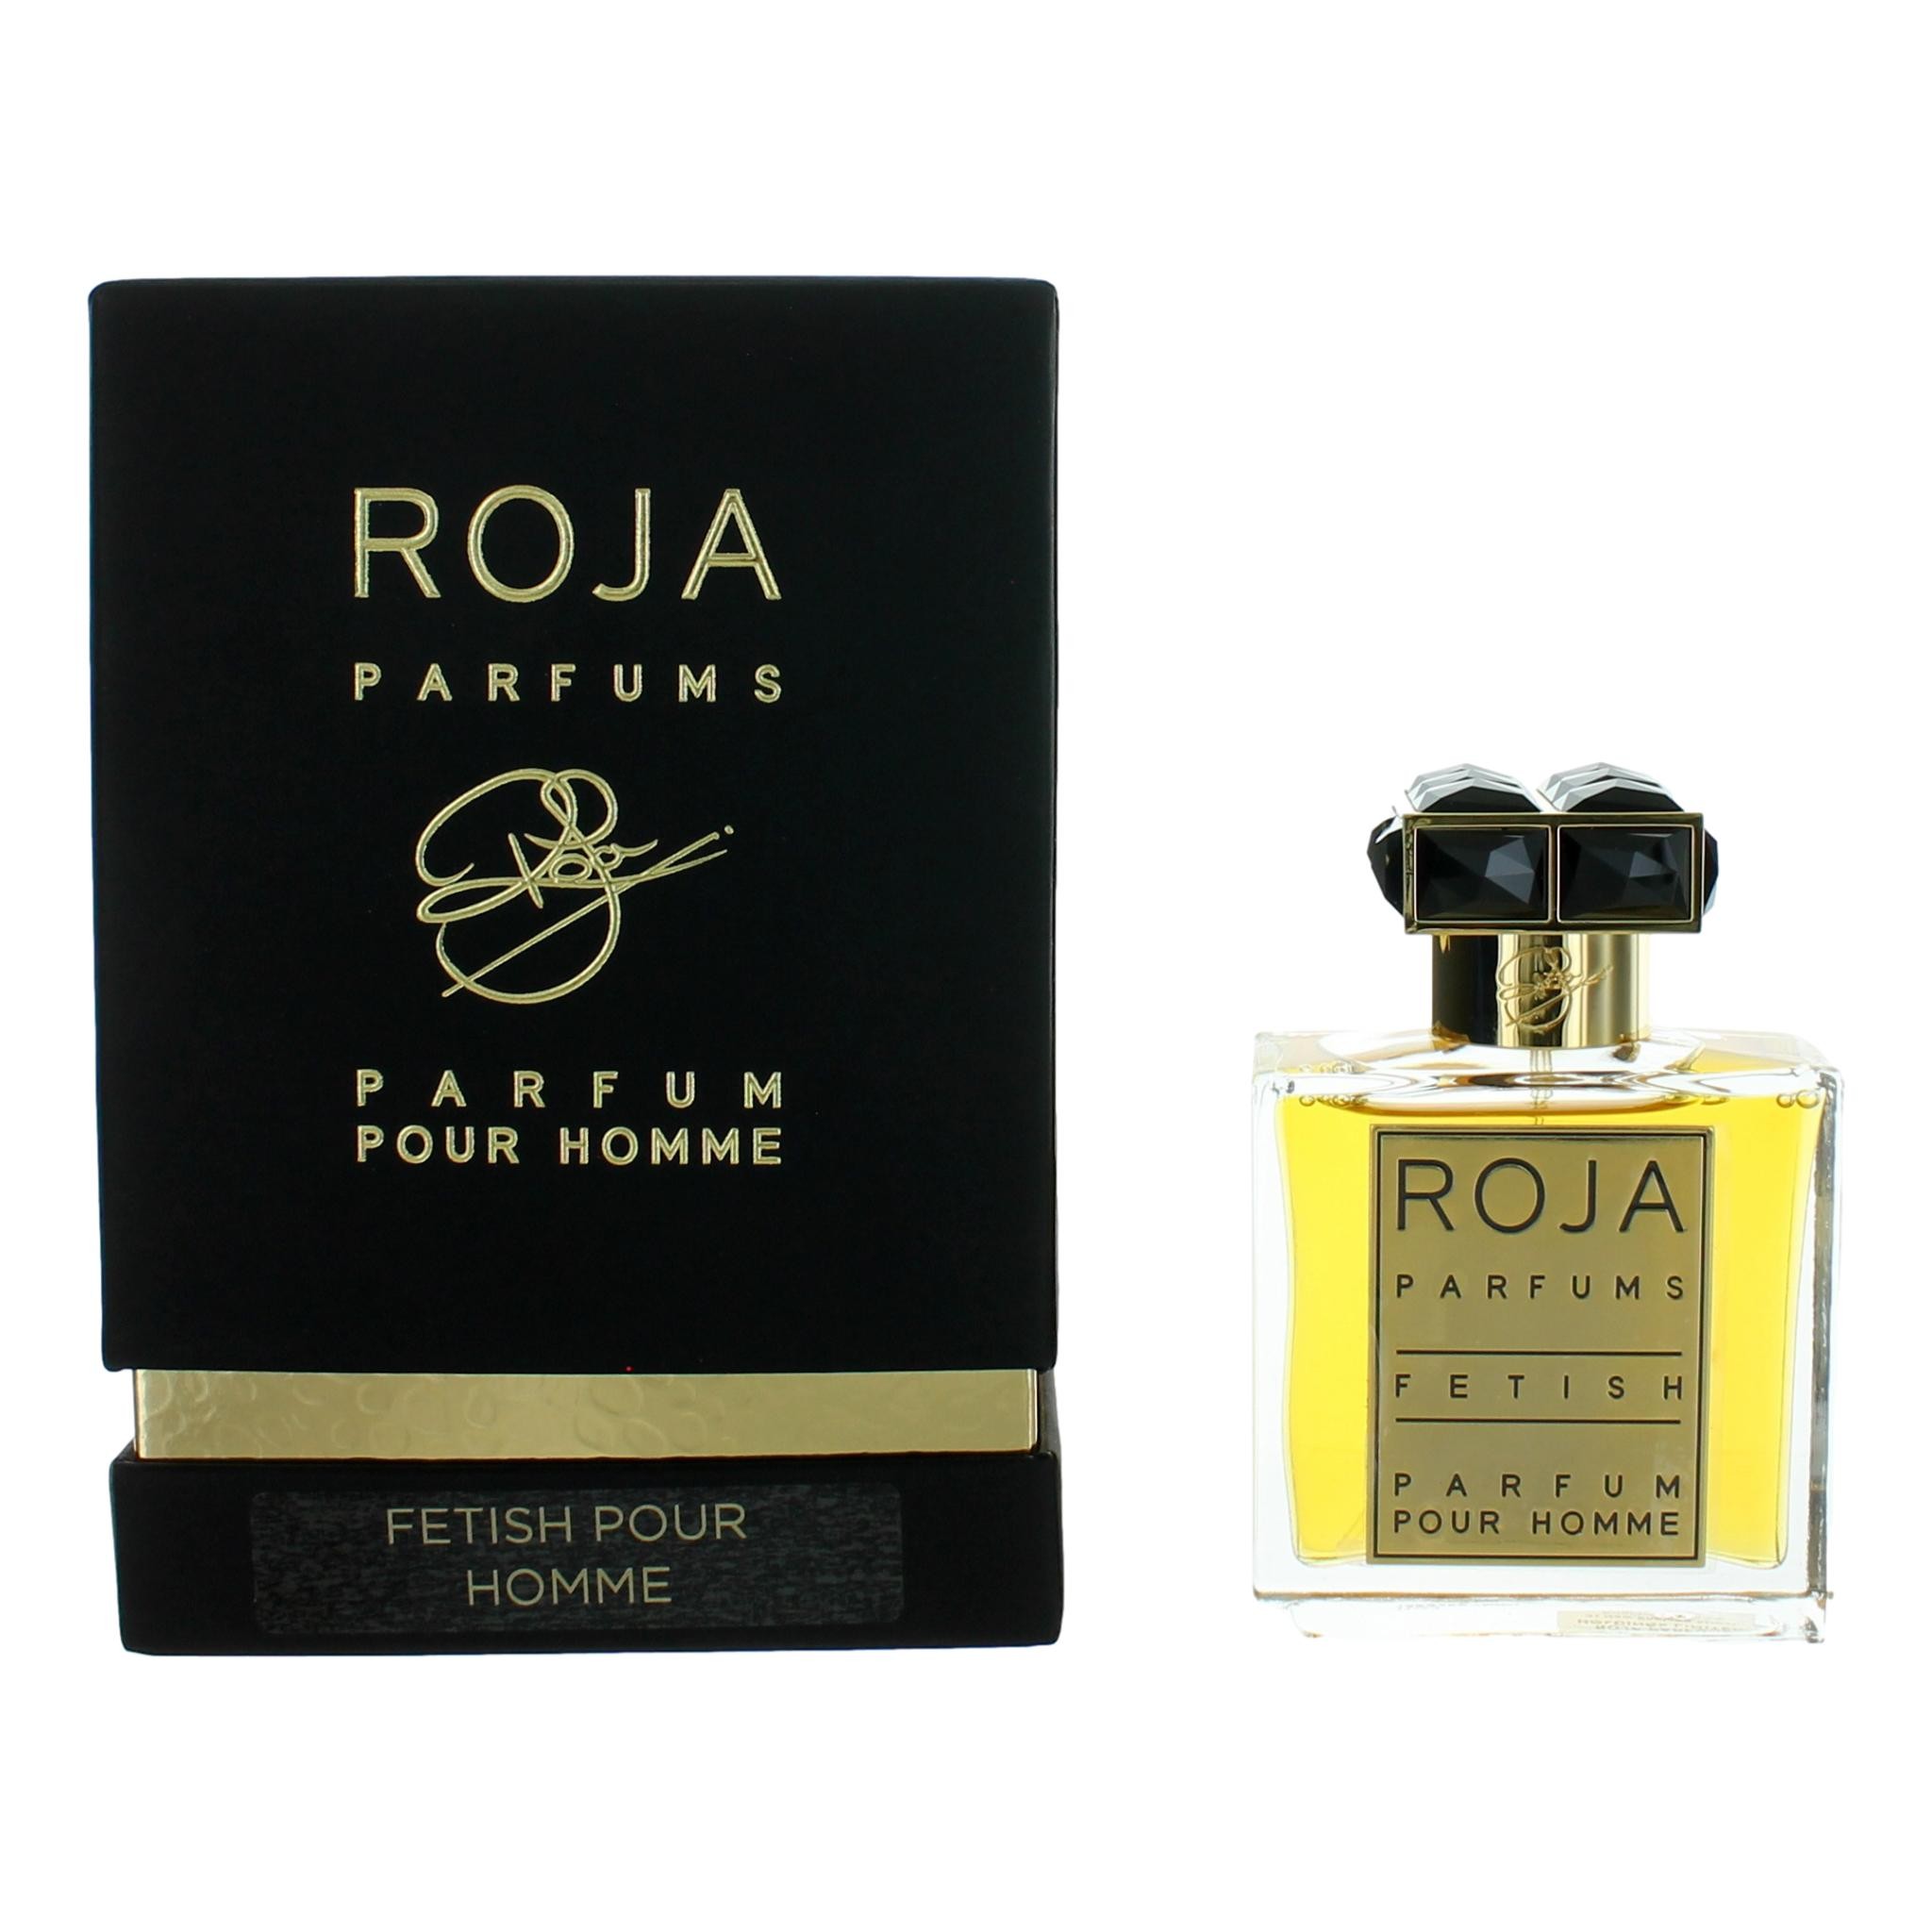 Fetish Pour Homme by Roja Parfums 1.7 oz Parfum Spray for Men